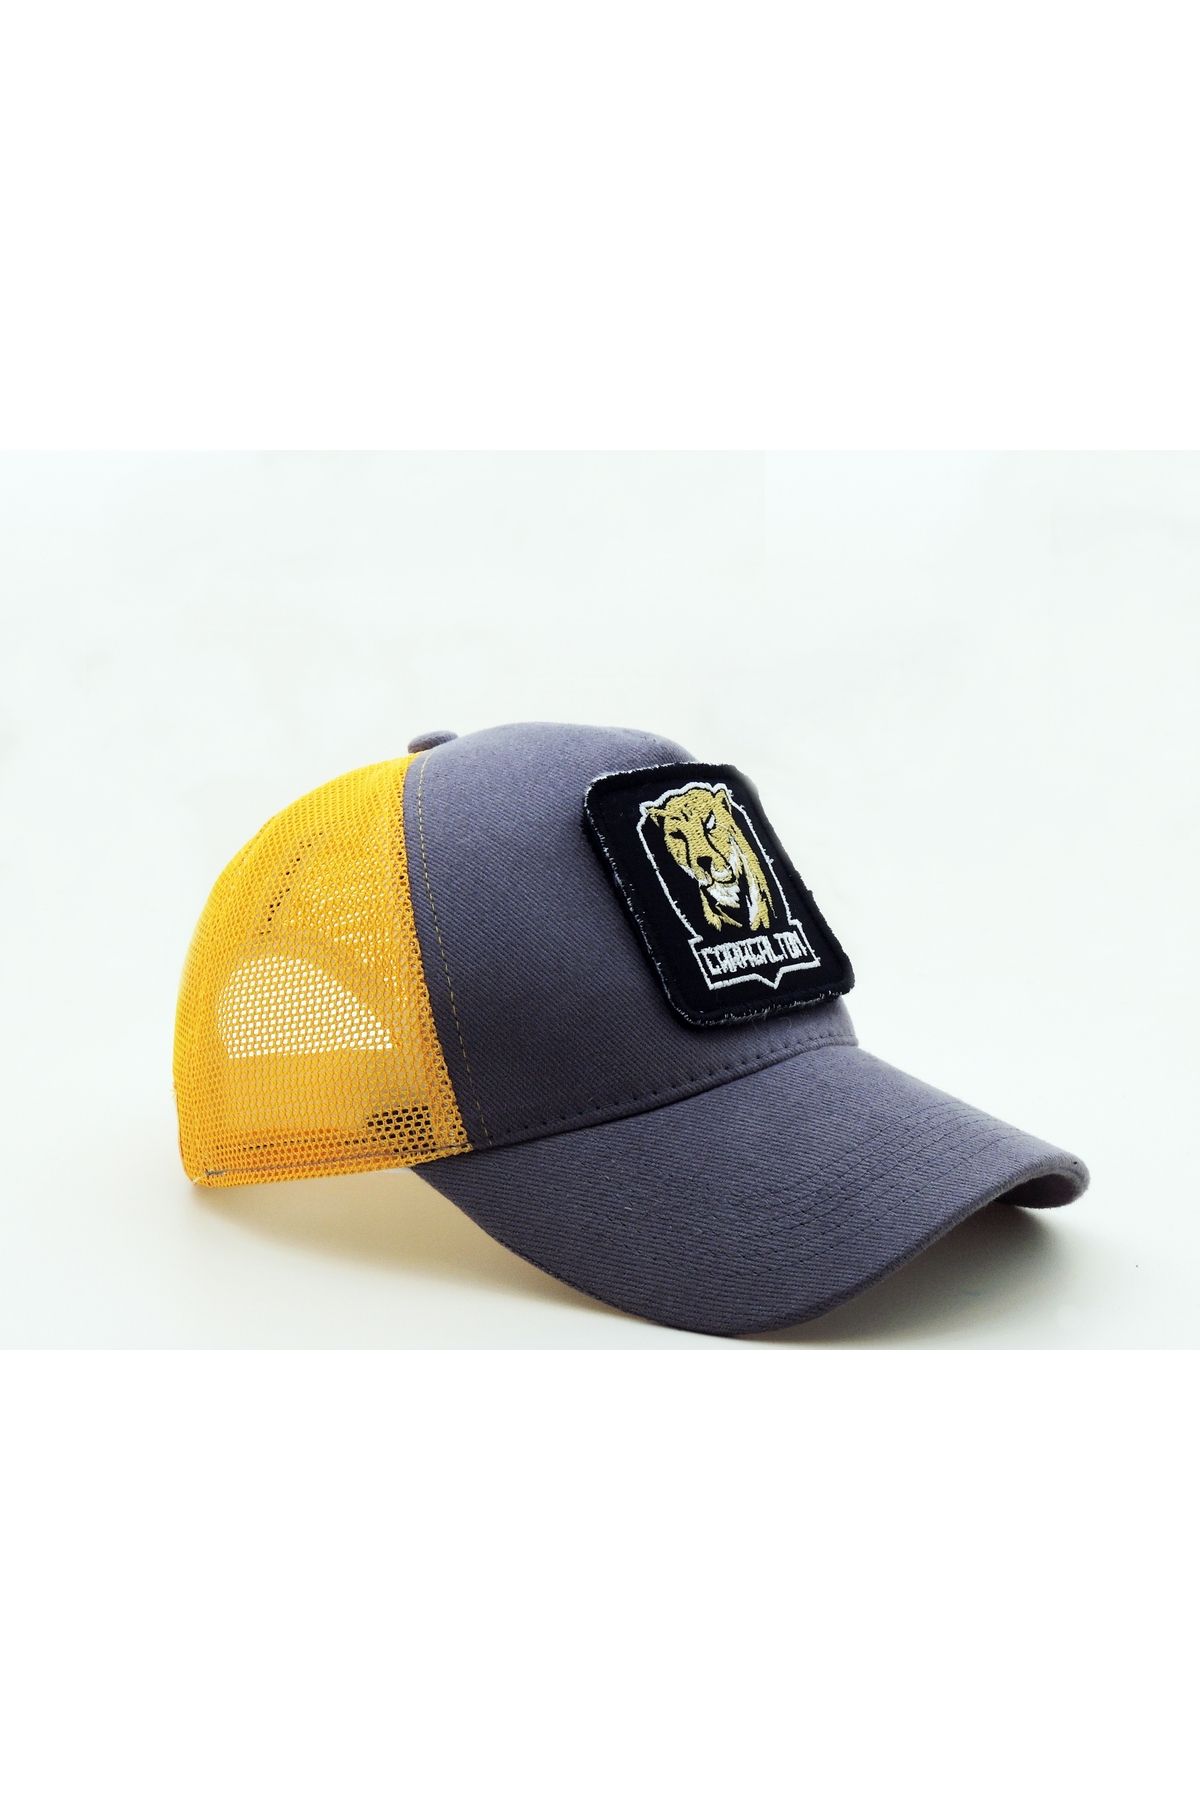 CityGoat Trucker Caracalton-780 Kod Logolu Unisex Gri-Sarı Şapka (CAP)